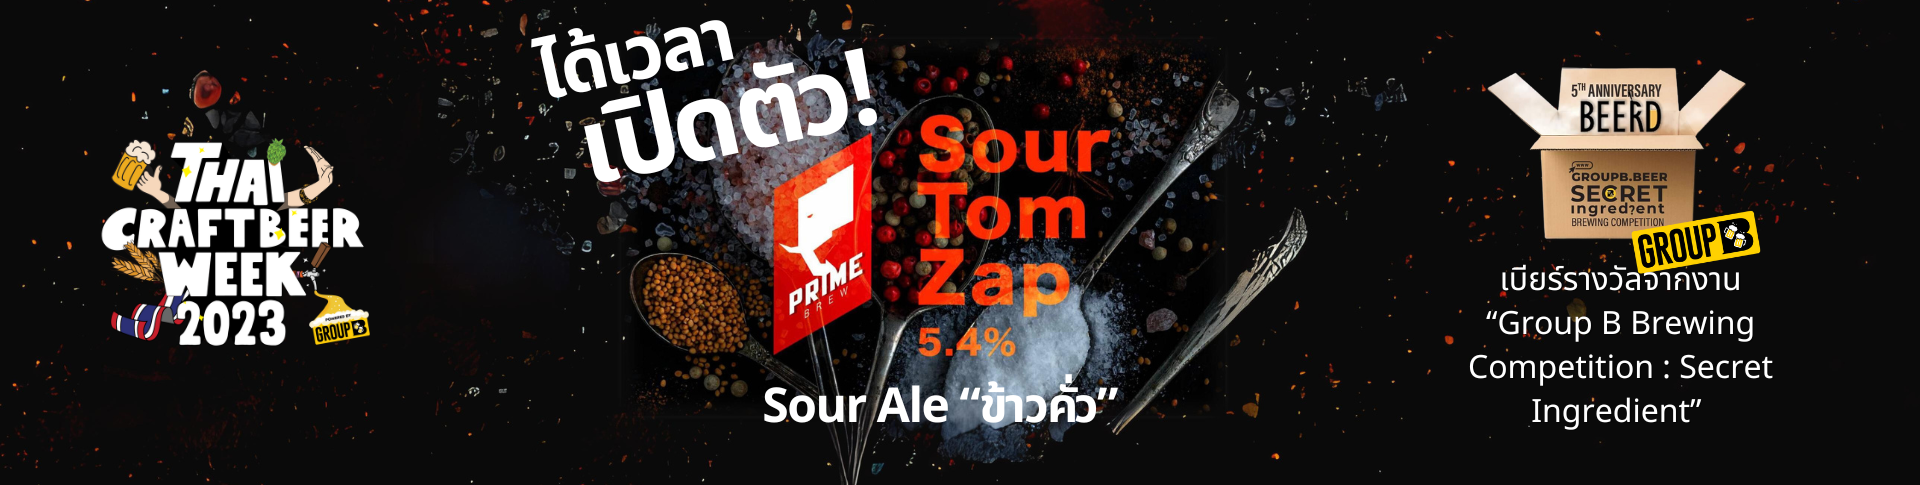 เปิดตัวเบียร์ “SourTom Zap”Sour Ale ข้าวคั่ว @Miss Me